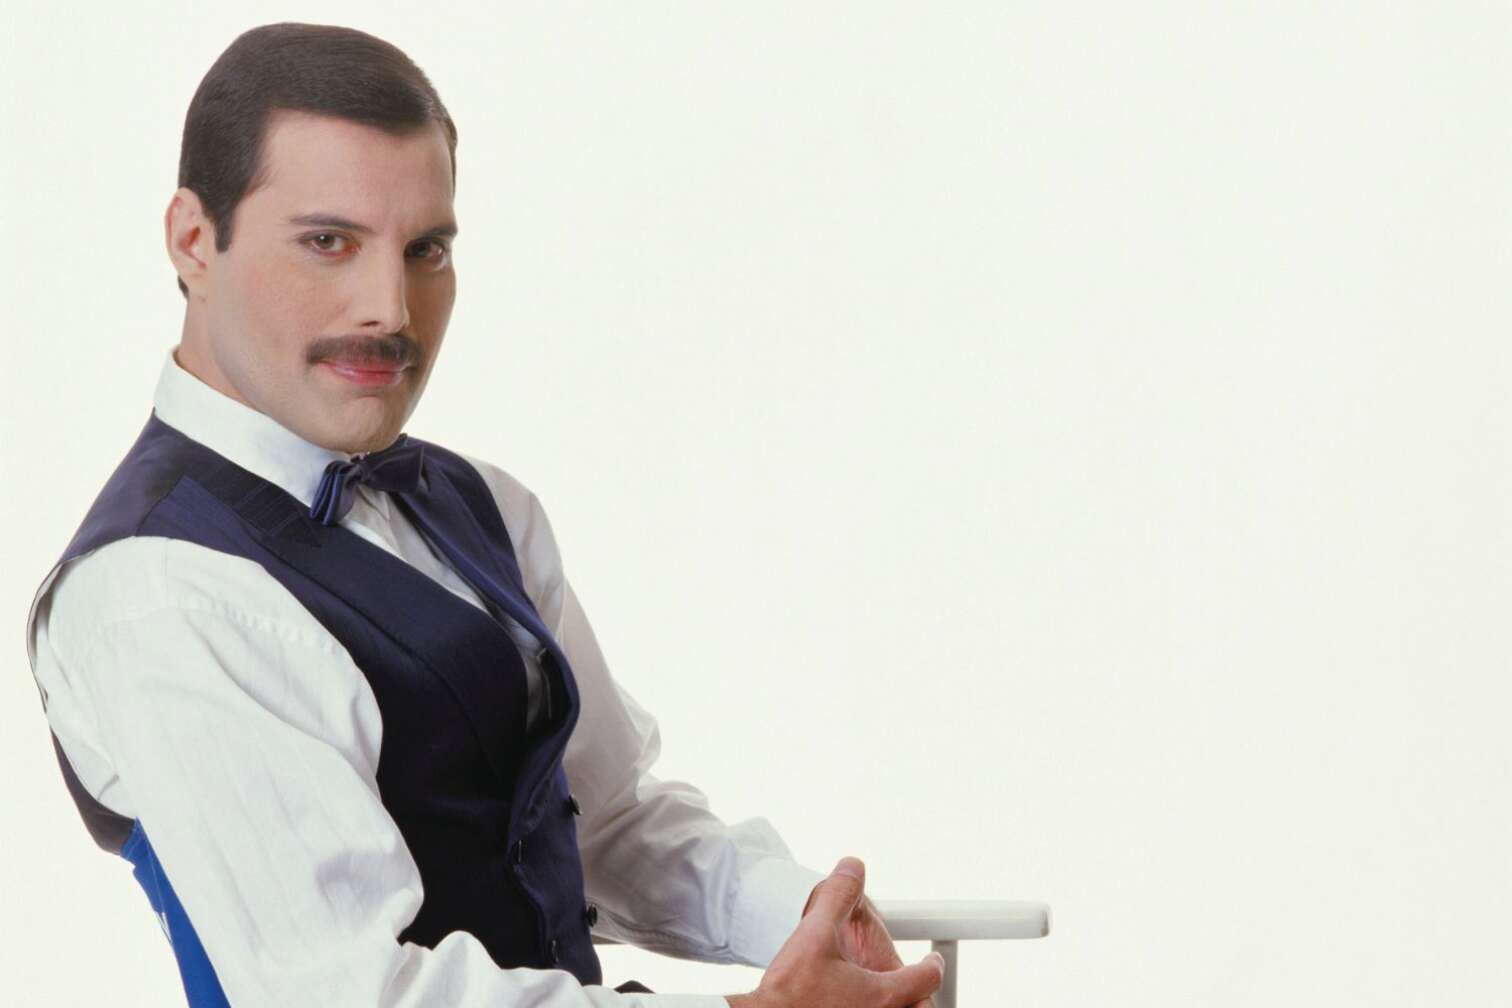 Queen-Frontmann Freddie Mercury